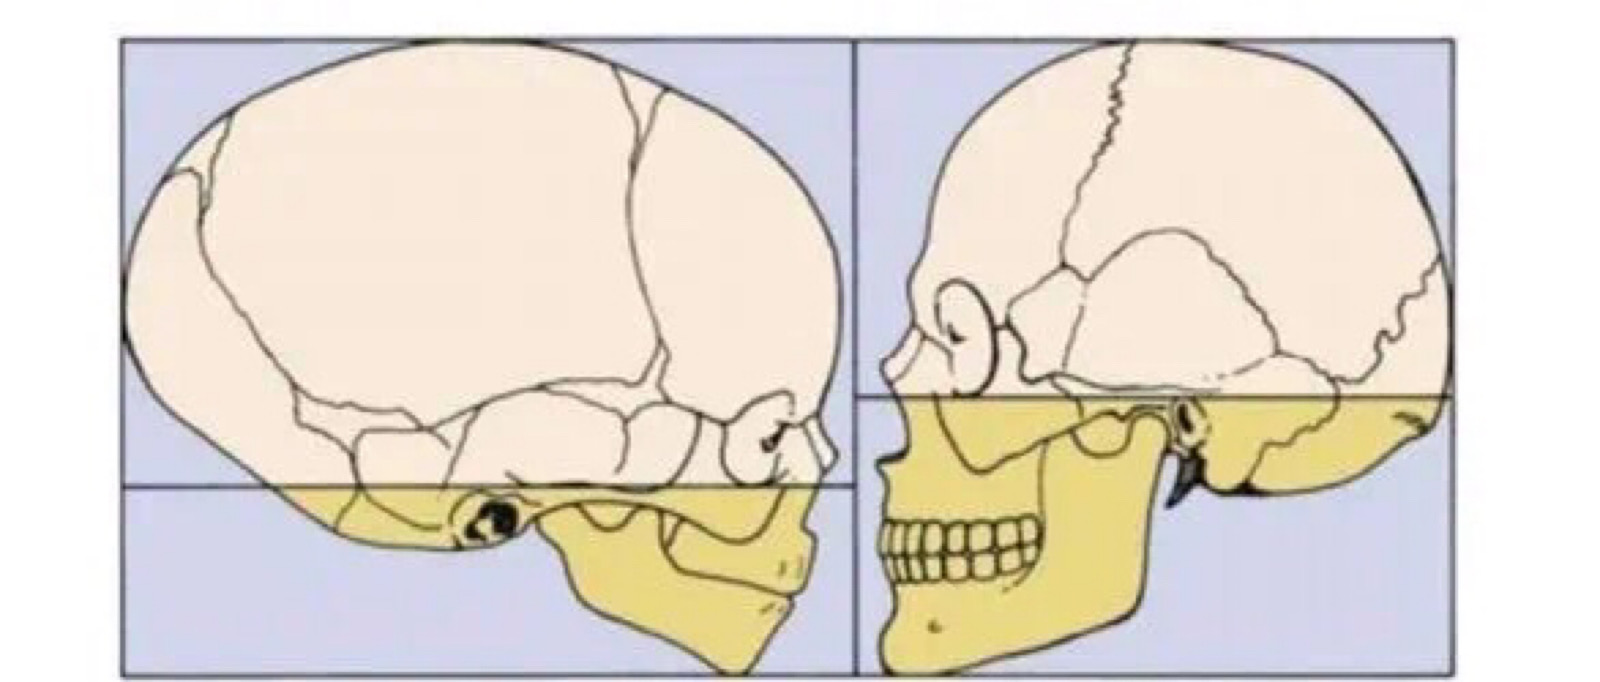 男女头骨差异图片